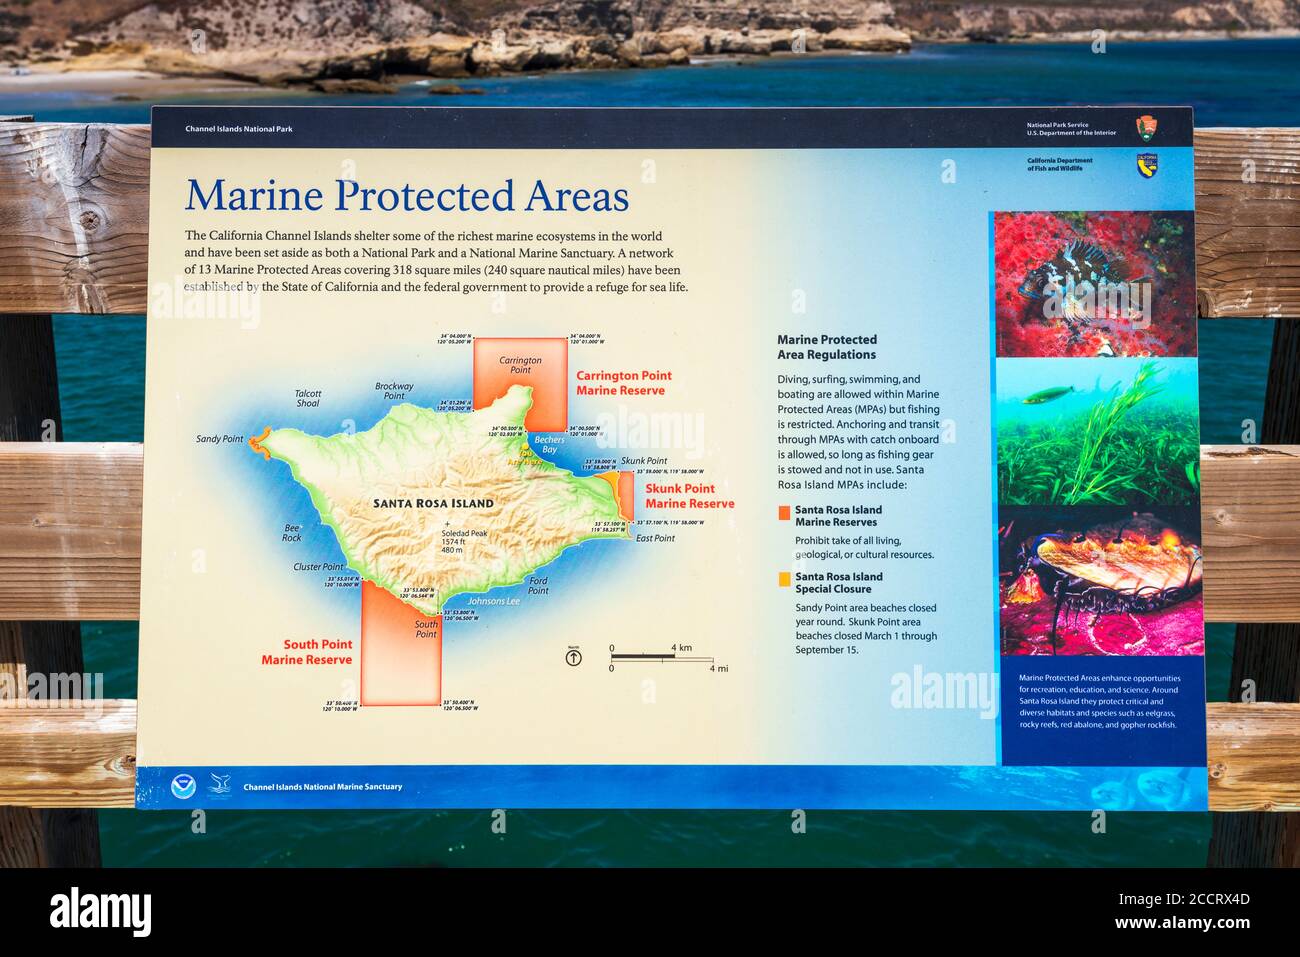 Panneau d'interprétation pour les aires marines protégées de l'île Santa Rosa, parc national des îles Anglo-Normandes, Californie, États-Unis Banque D'Images